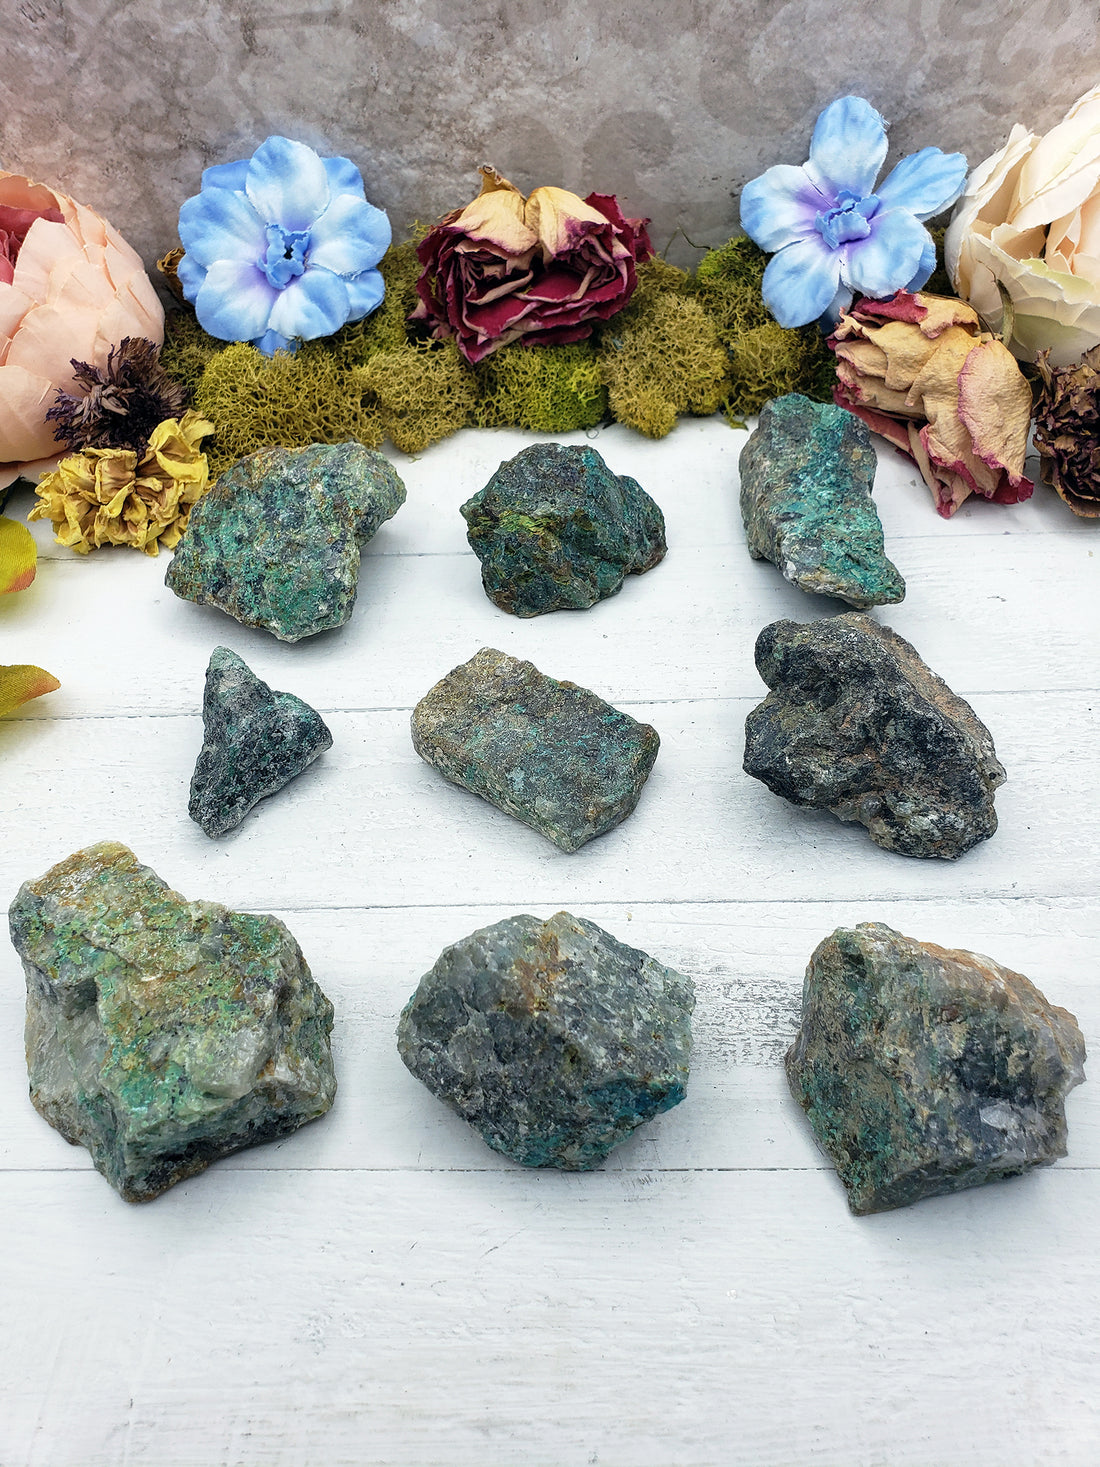 nine rough chrysoprase stones on display of various sizes